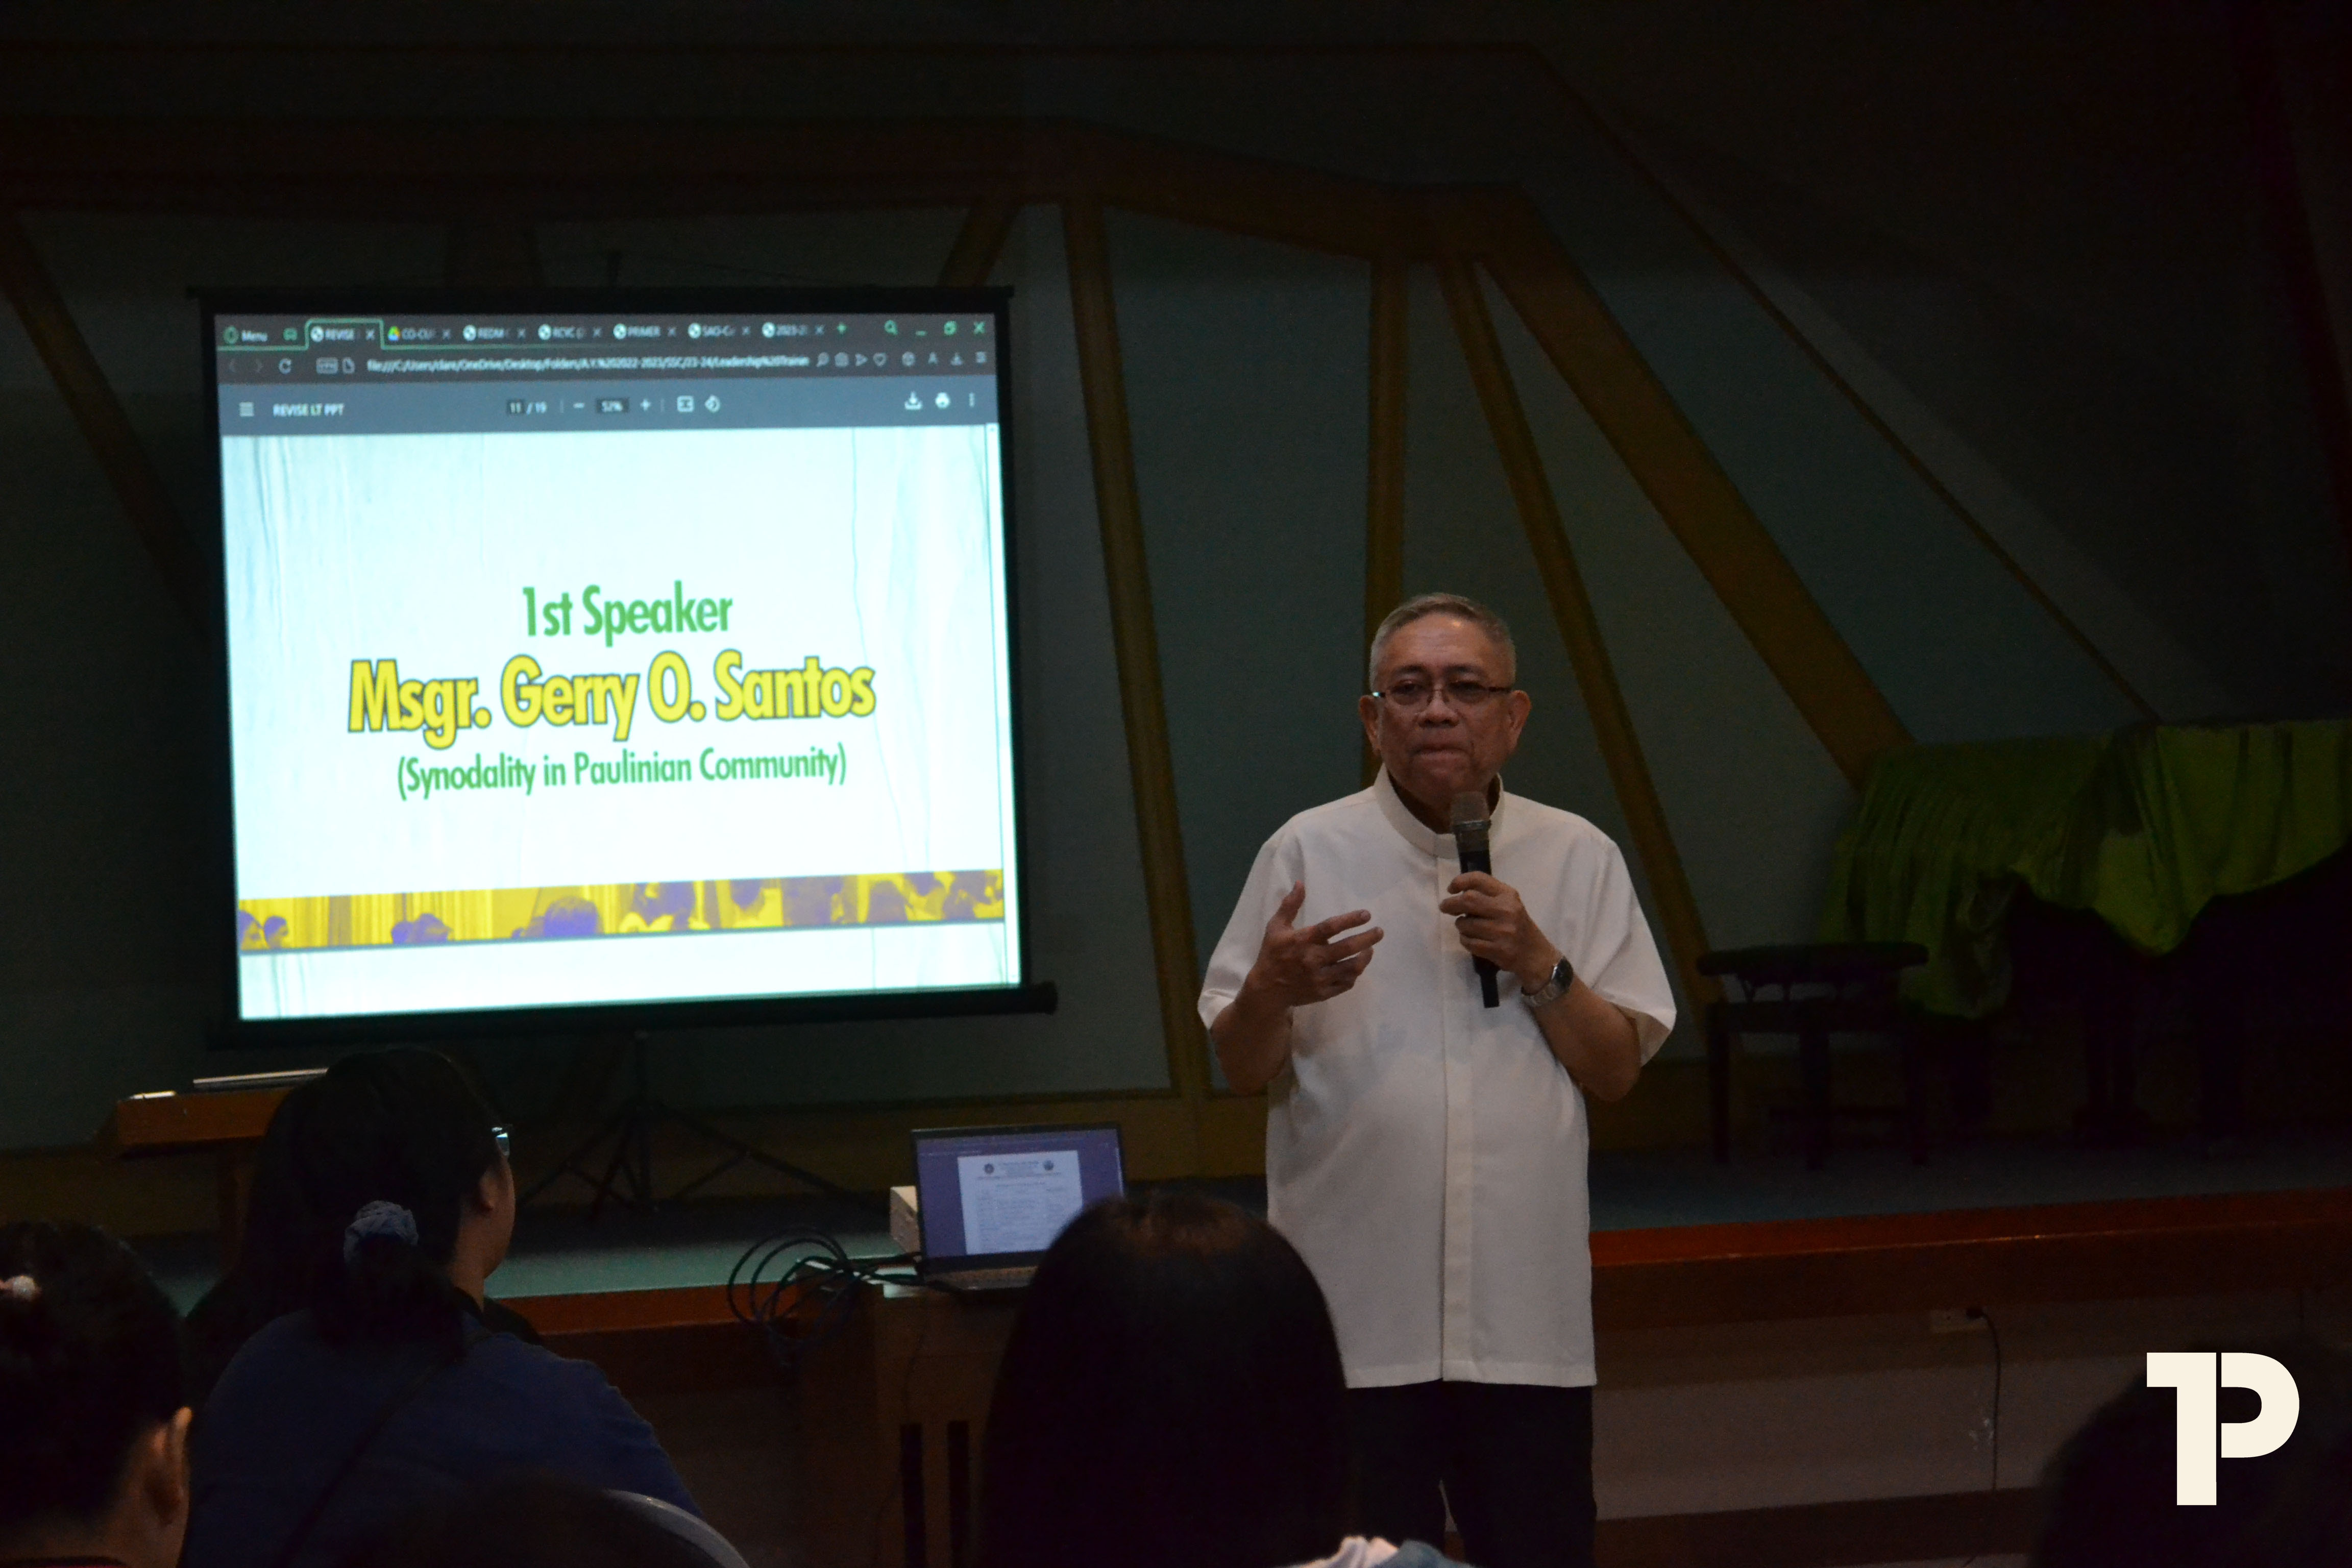 Msgr. Santos on Synodality in Paulinian Community